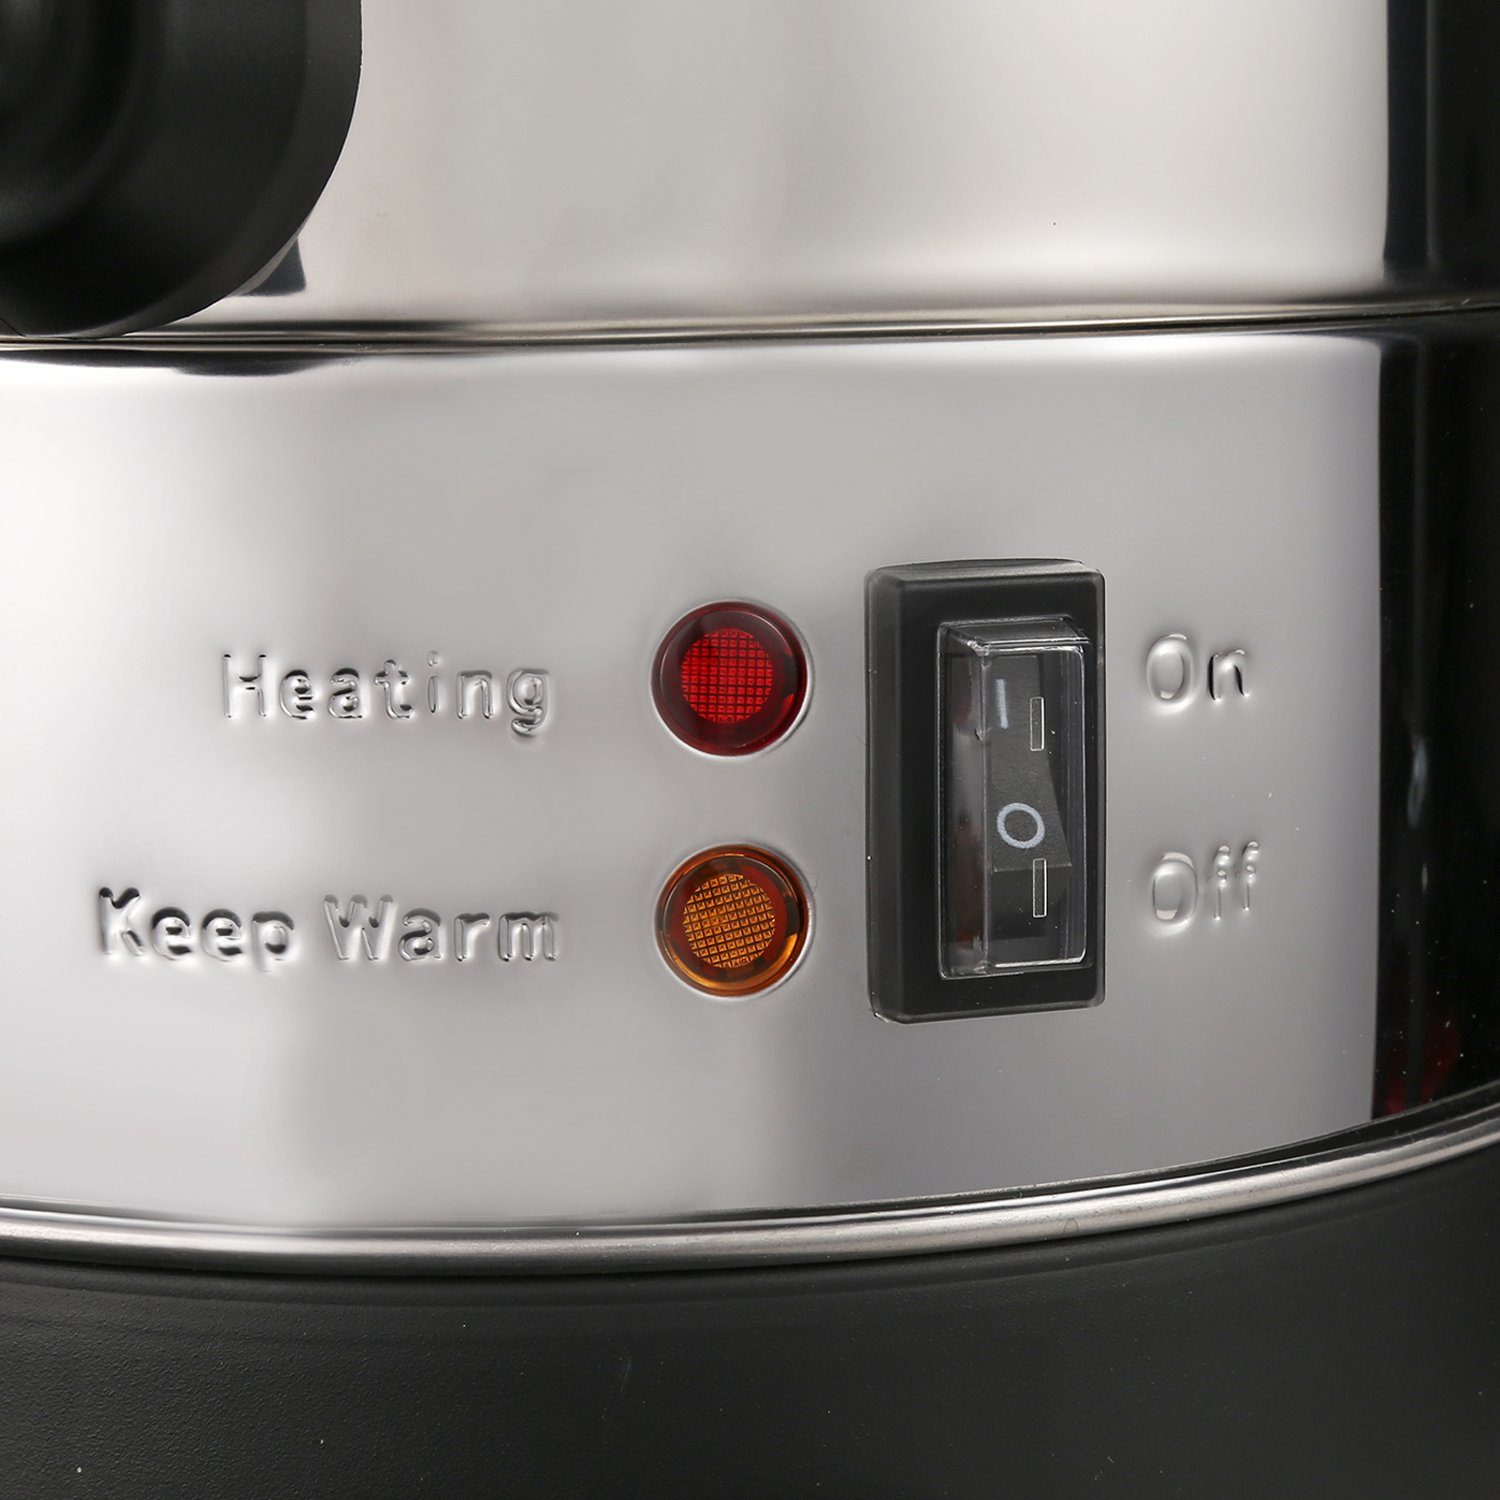 W Heißgetränkeautomat Glühweinautomat Heißwasserspender 8L, Kocher 1500 und Edelstahl Clanmacy Glühweinkocher Wasserkocher Glühweinkessel Einkoch- Einkochautomat,